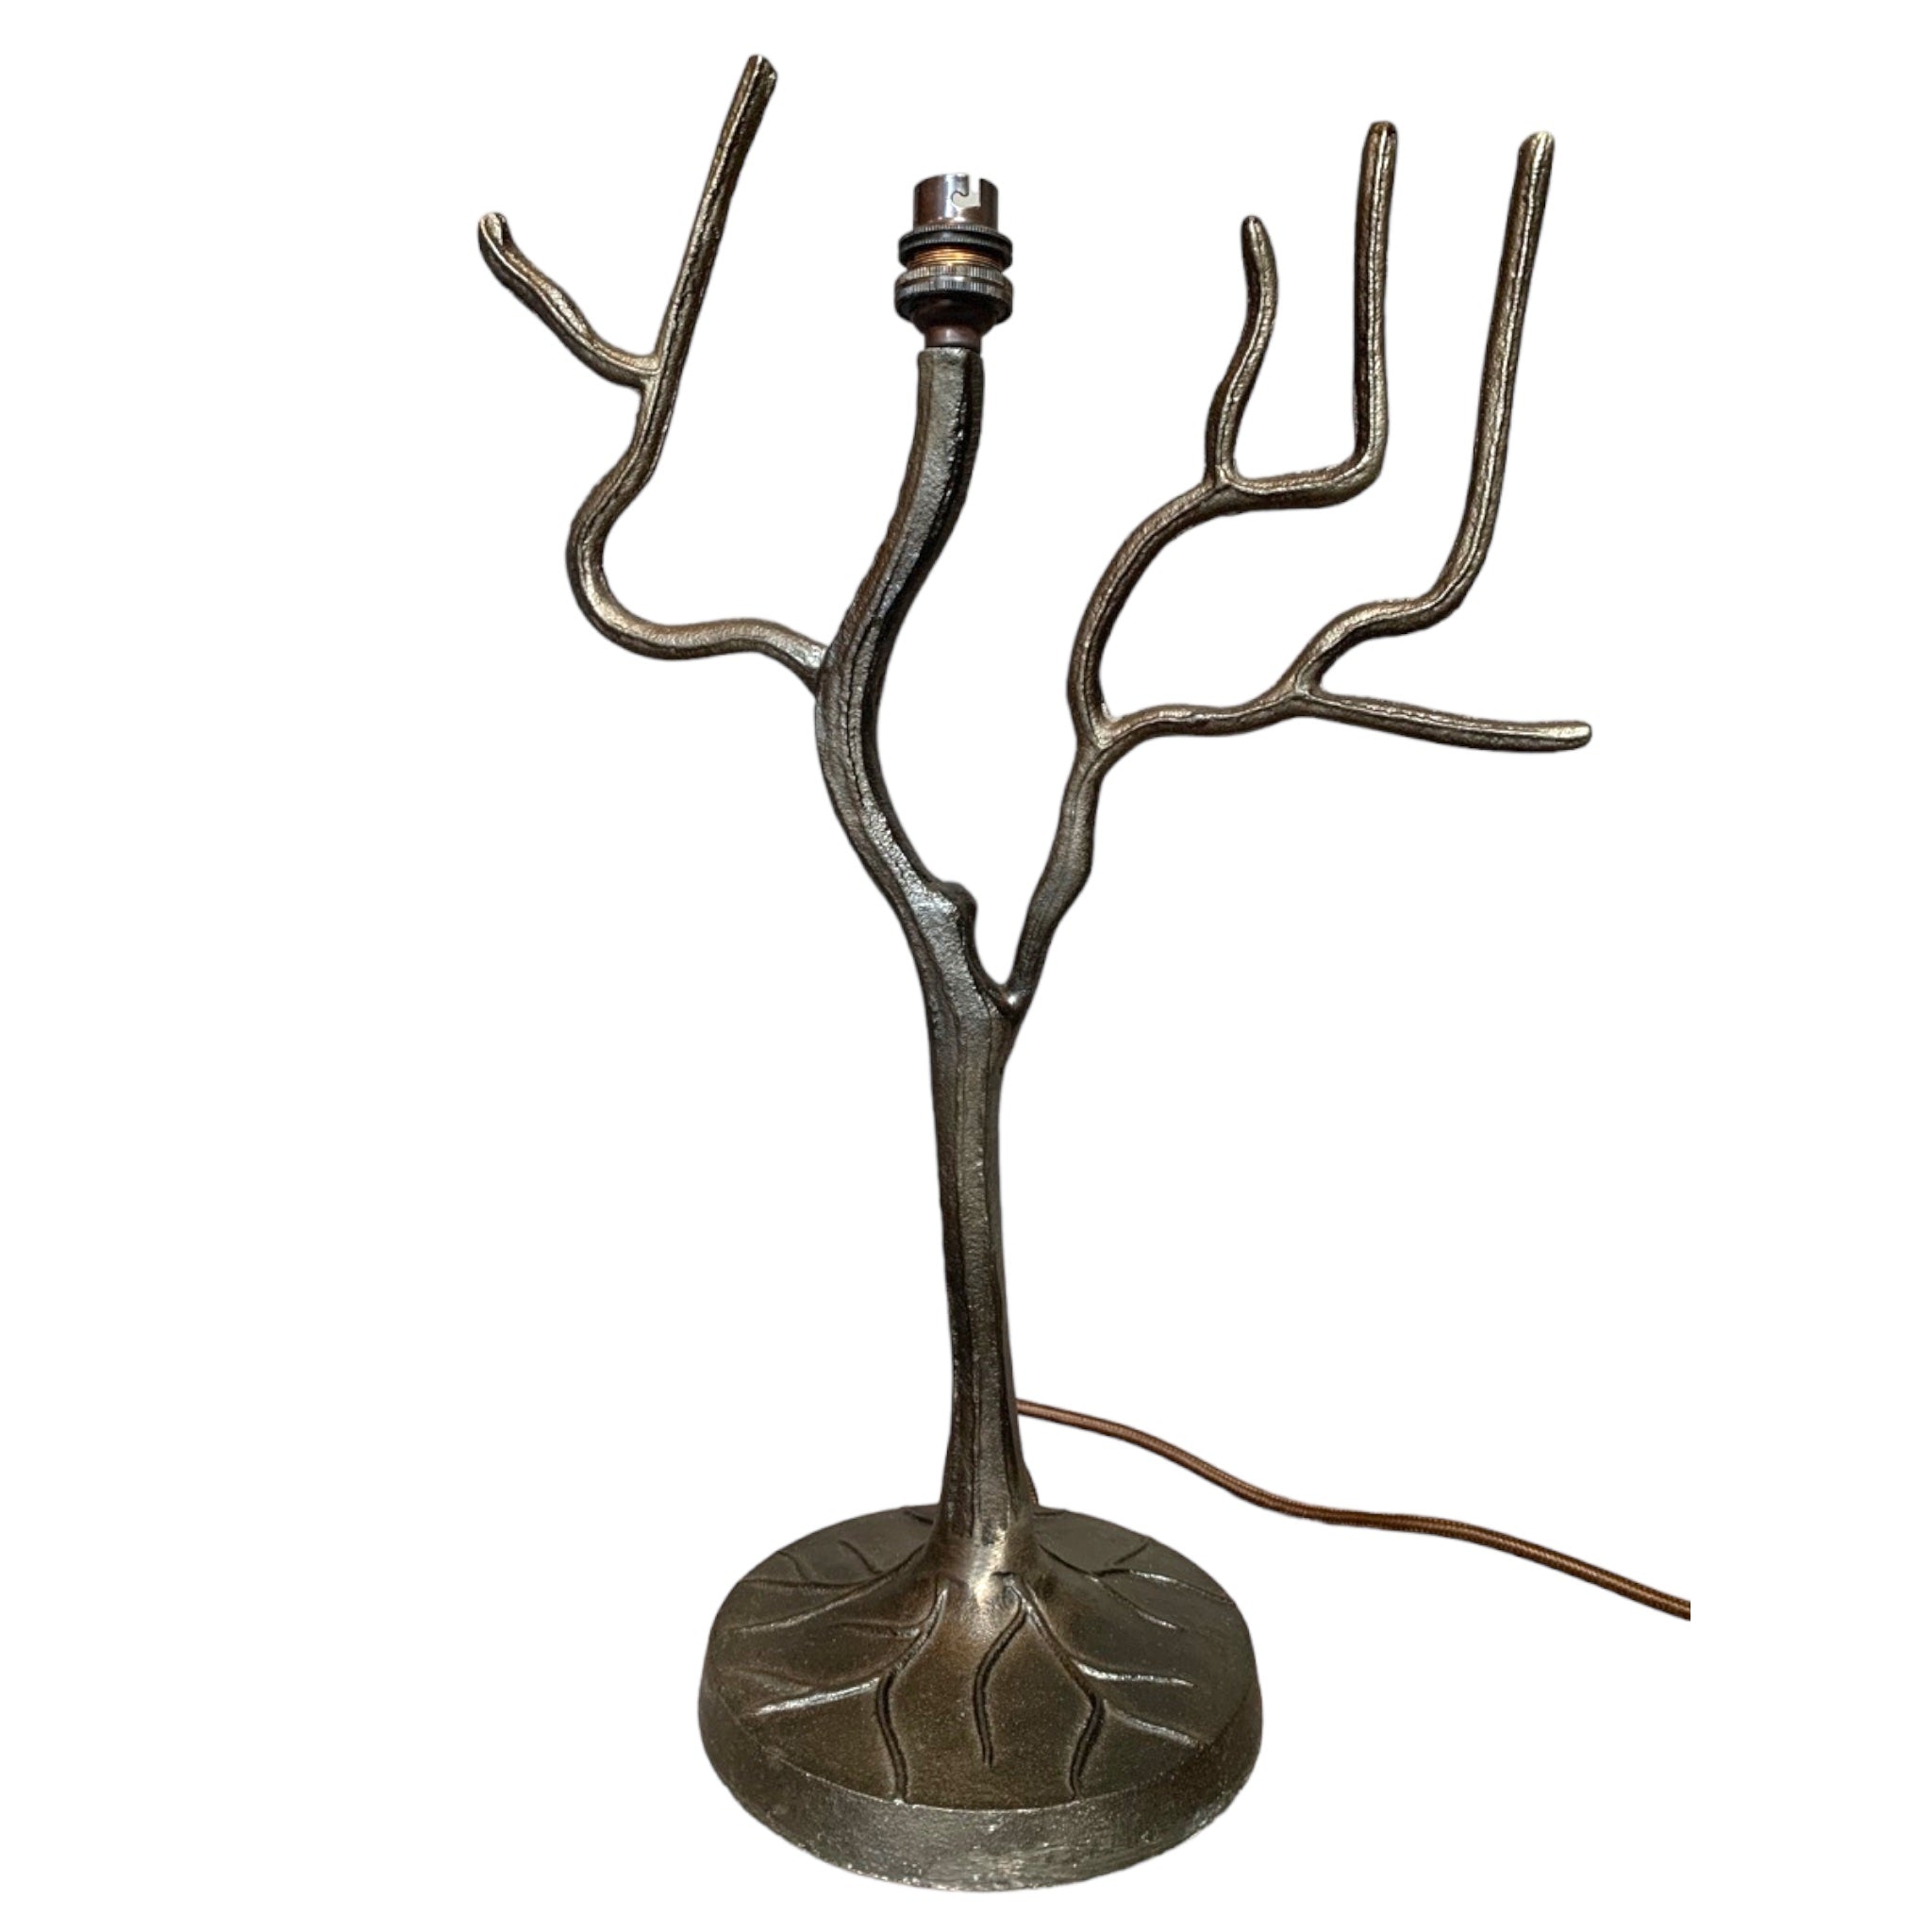 Adita Tree Table Lamp